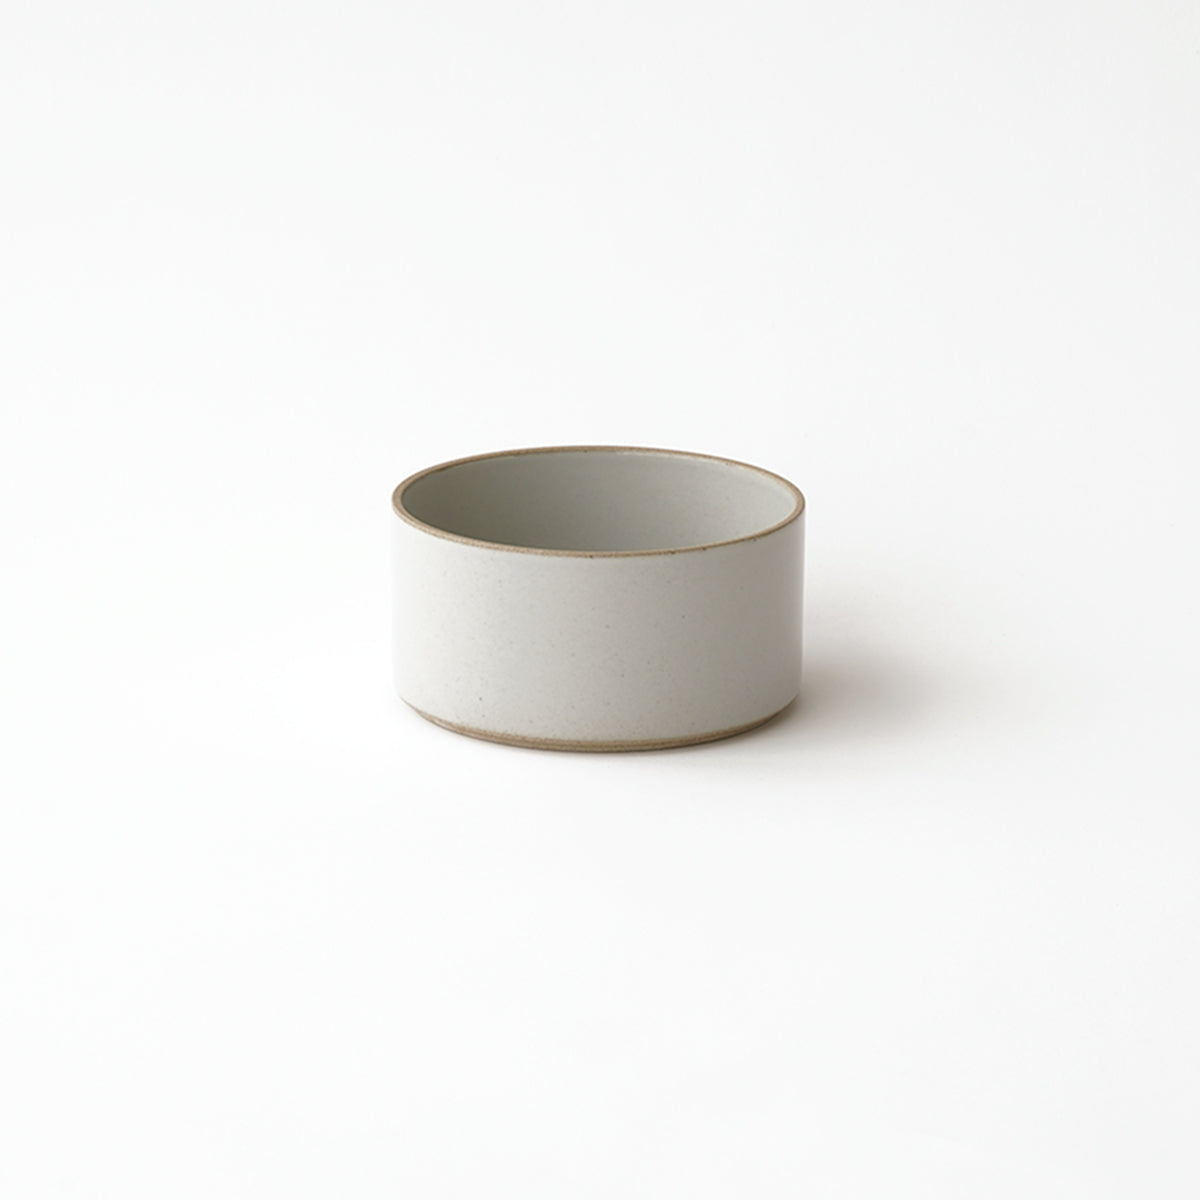 Hasami Porcelain Tall Bowl 5 5/8" Gloss Gray